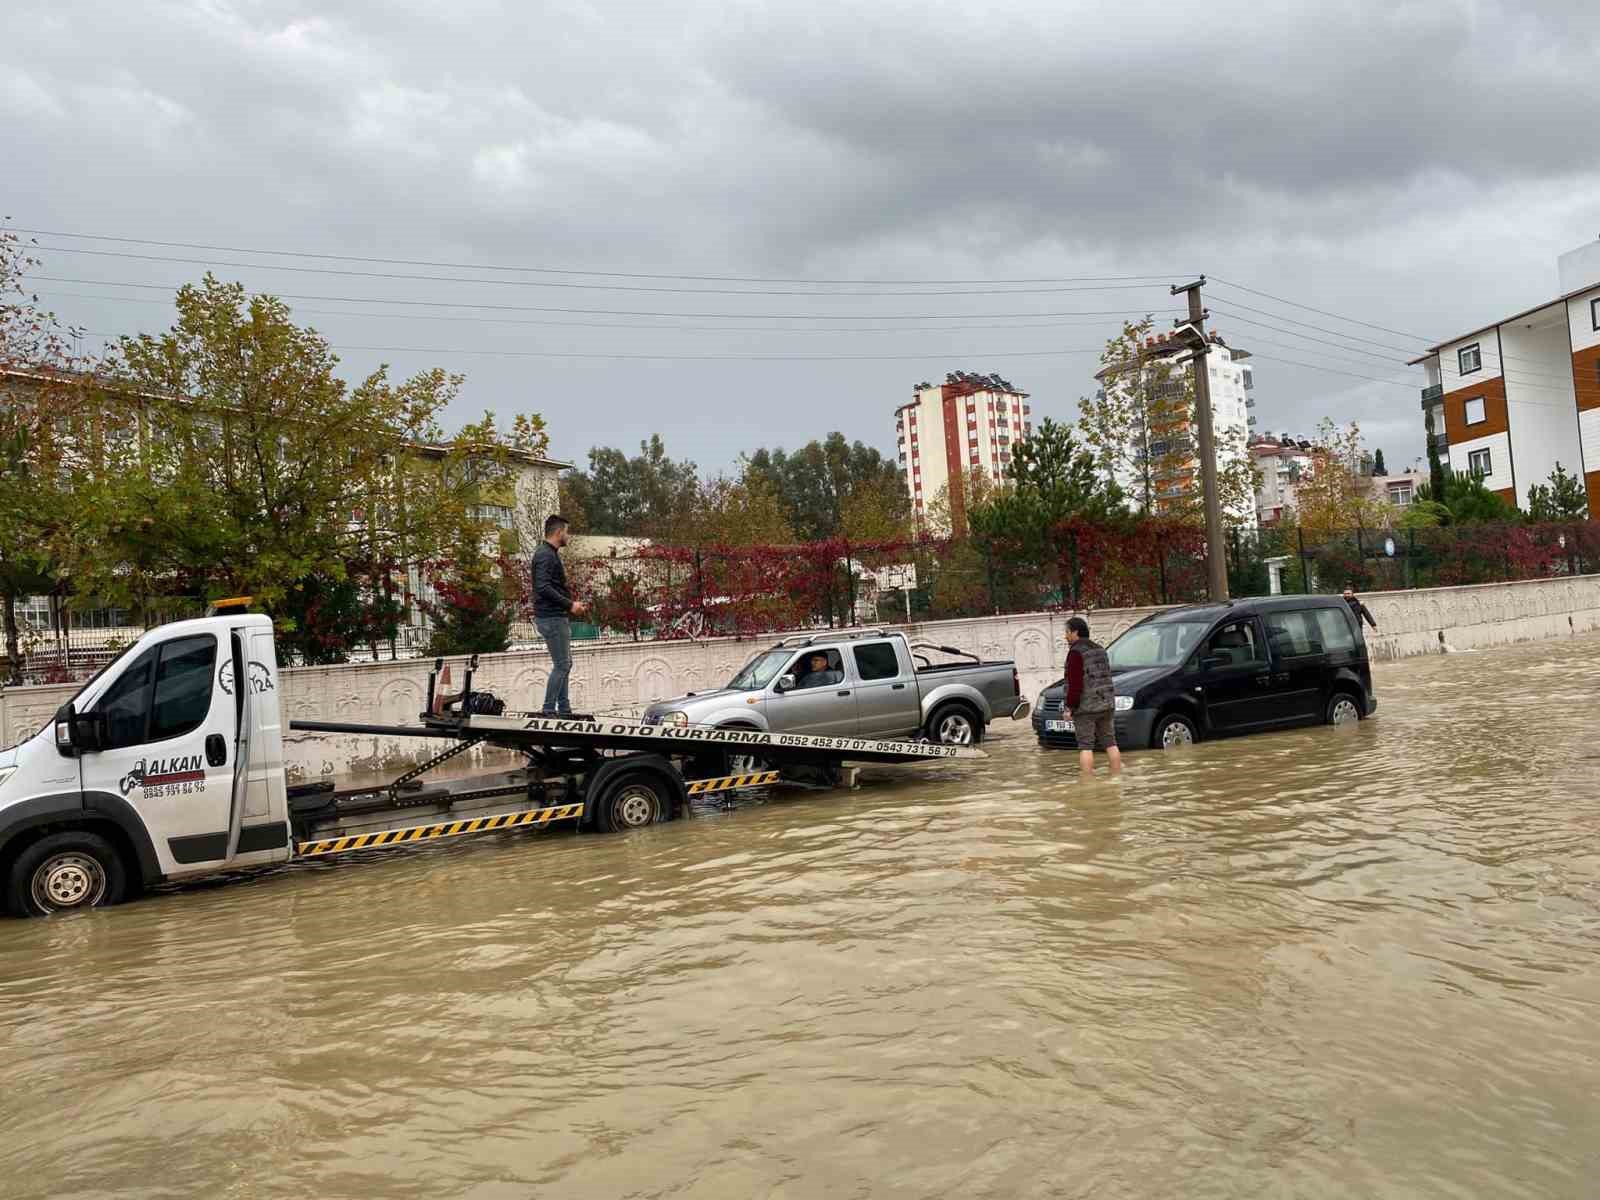 Antalya’da yağış hayatı olumsuz etkiledi: Araçlar yolda kaldı, evleri su bastı